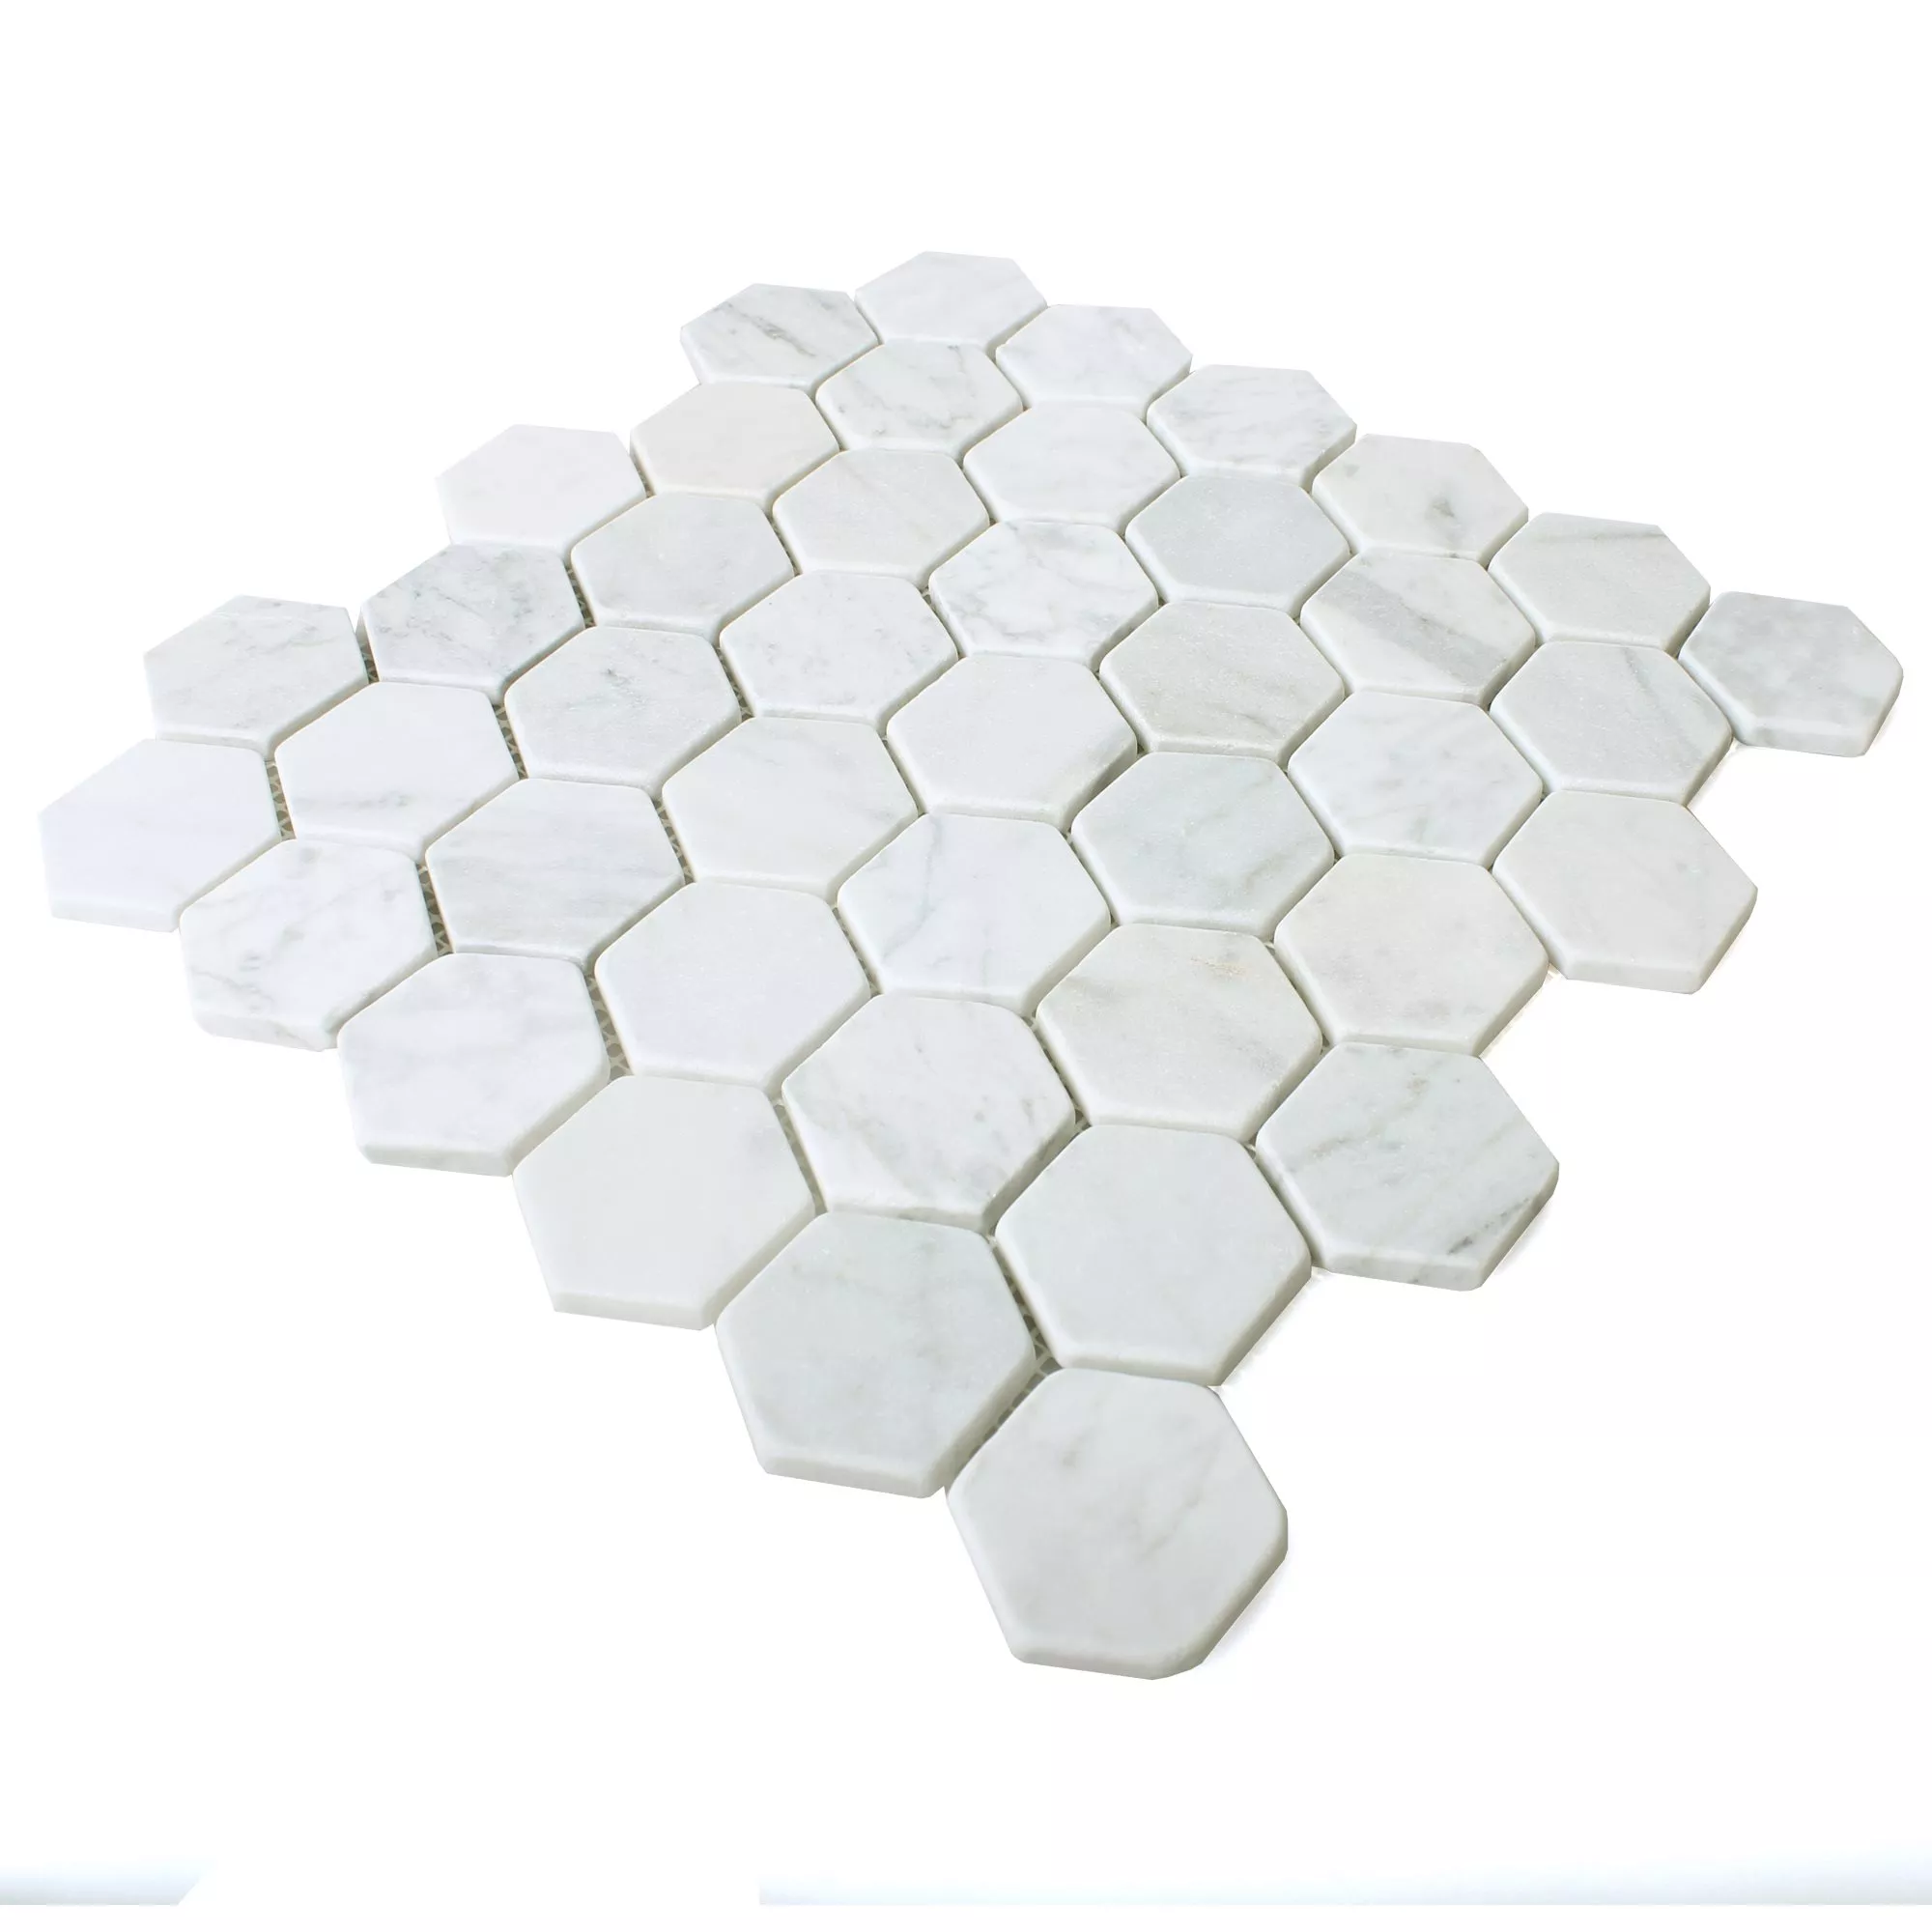 Sample Mosaic Tiles Marble Wutach Hexagon White Carrara